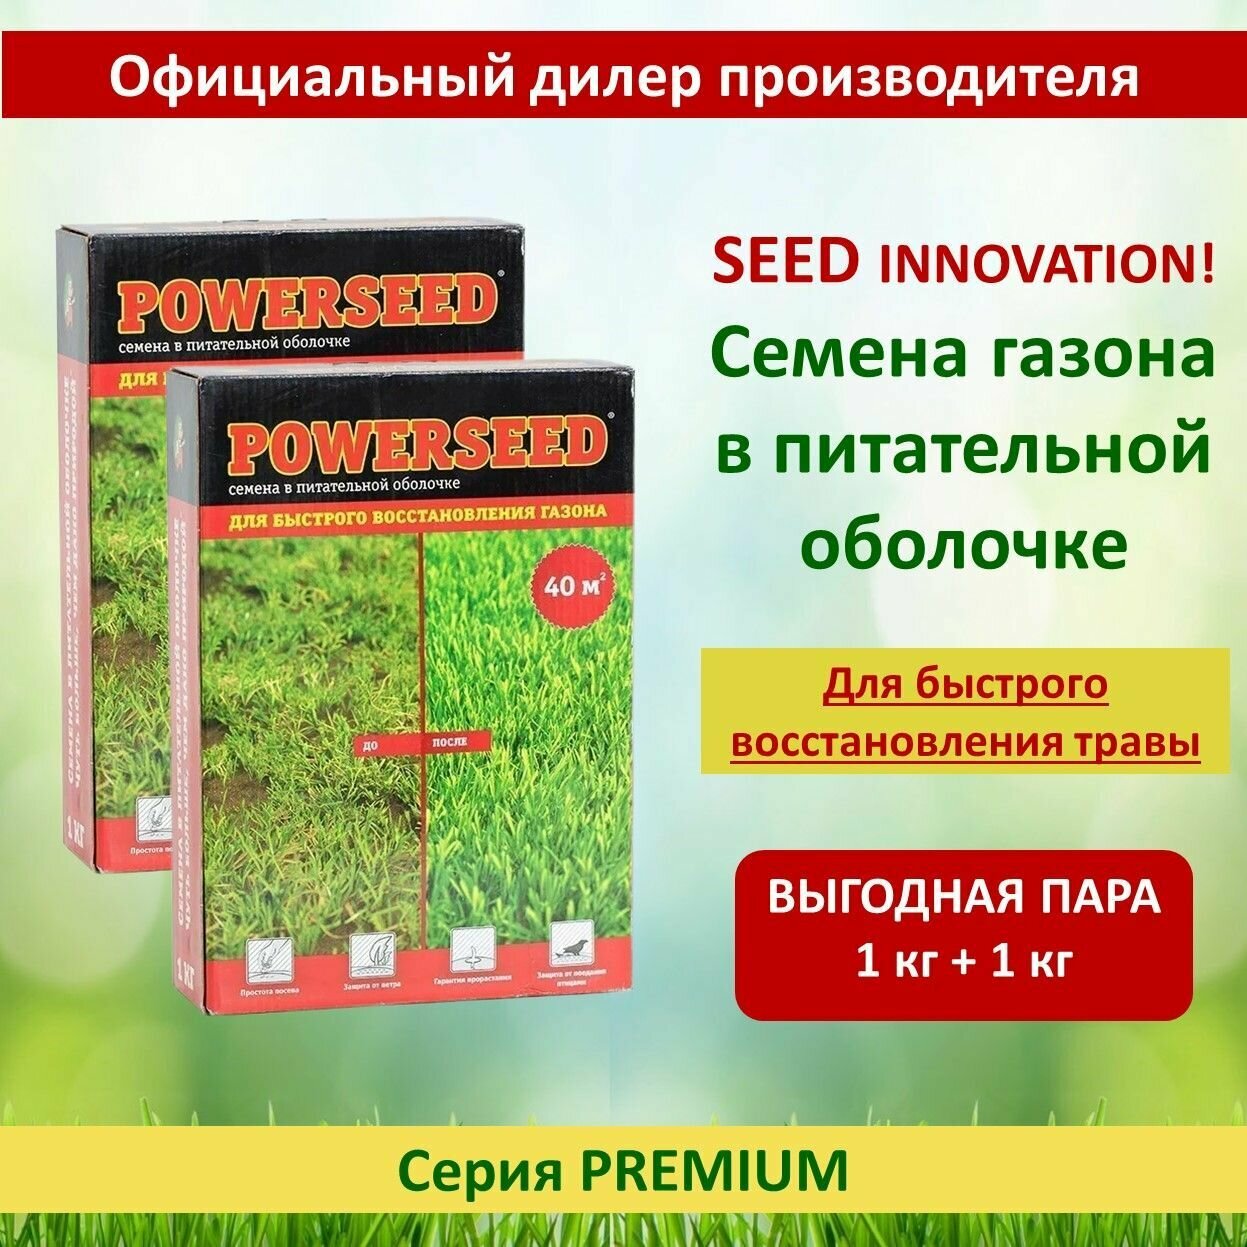 Семена в питательной оболочке Powerseed, для быстрого восстановления газона, 1 кг х 2 шт